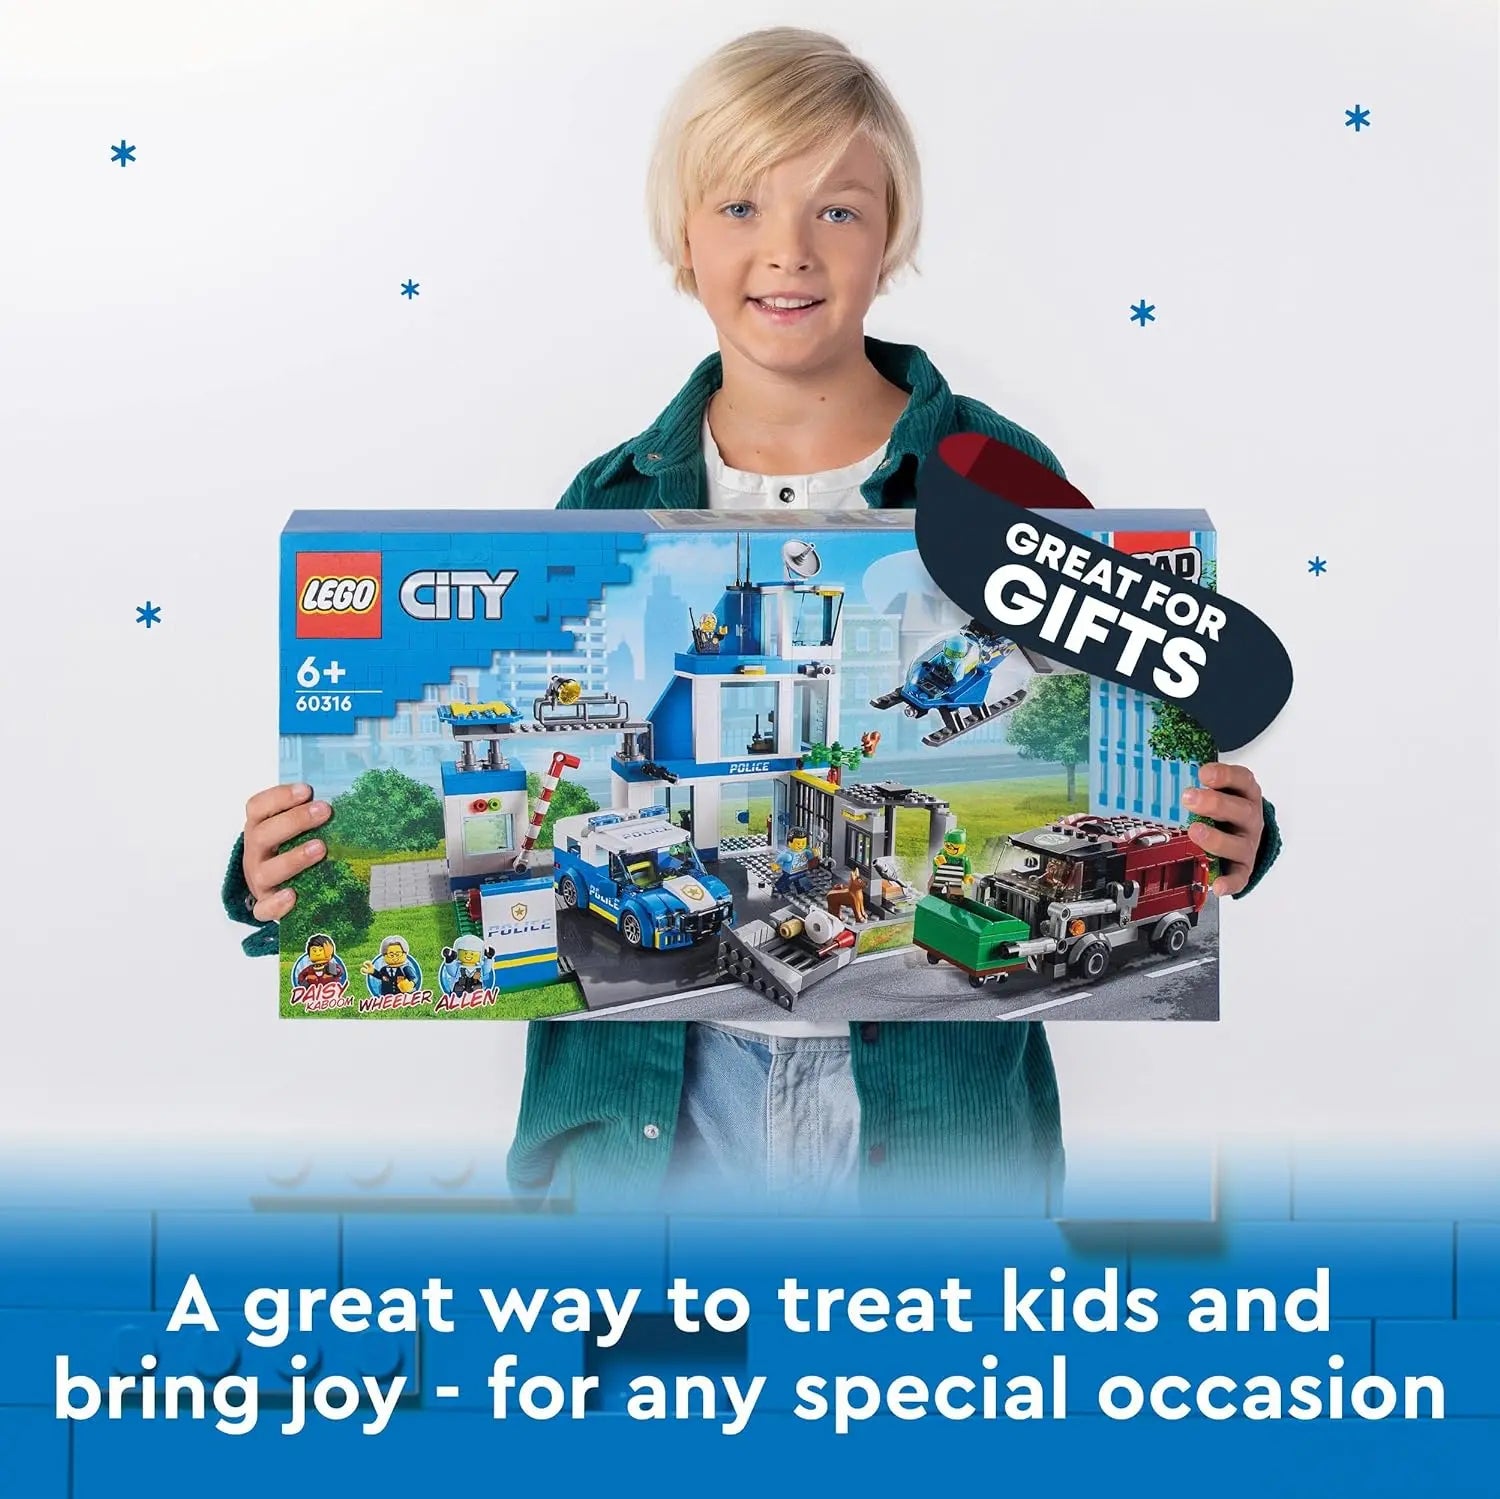 LEGO City Pack : Inclut Le Commissariat de Police (60316) et Les